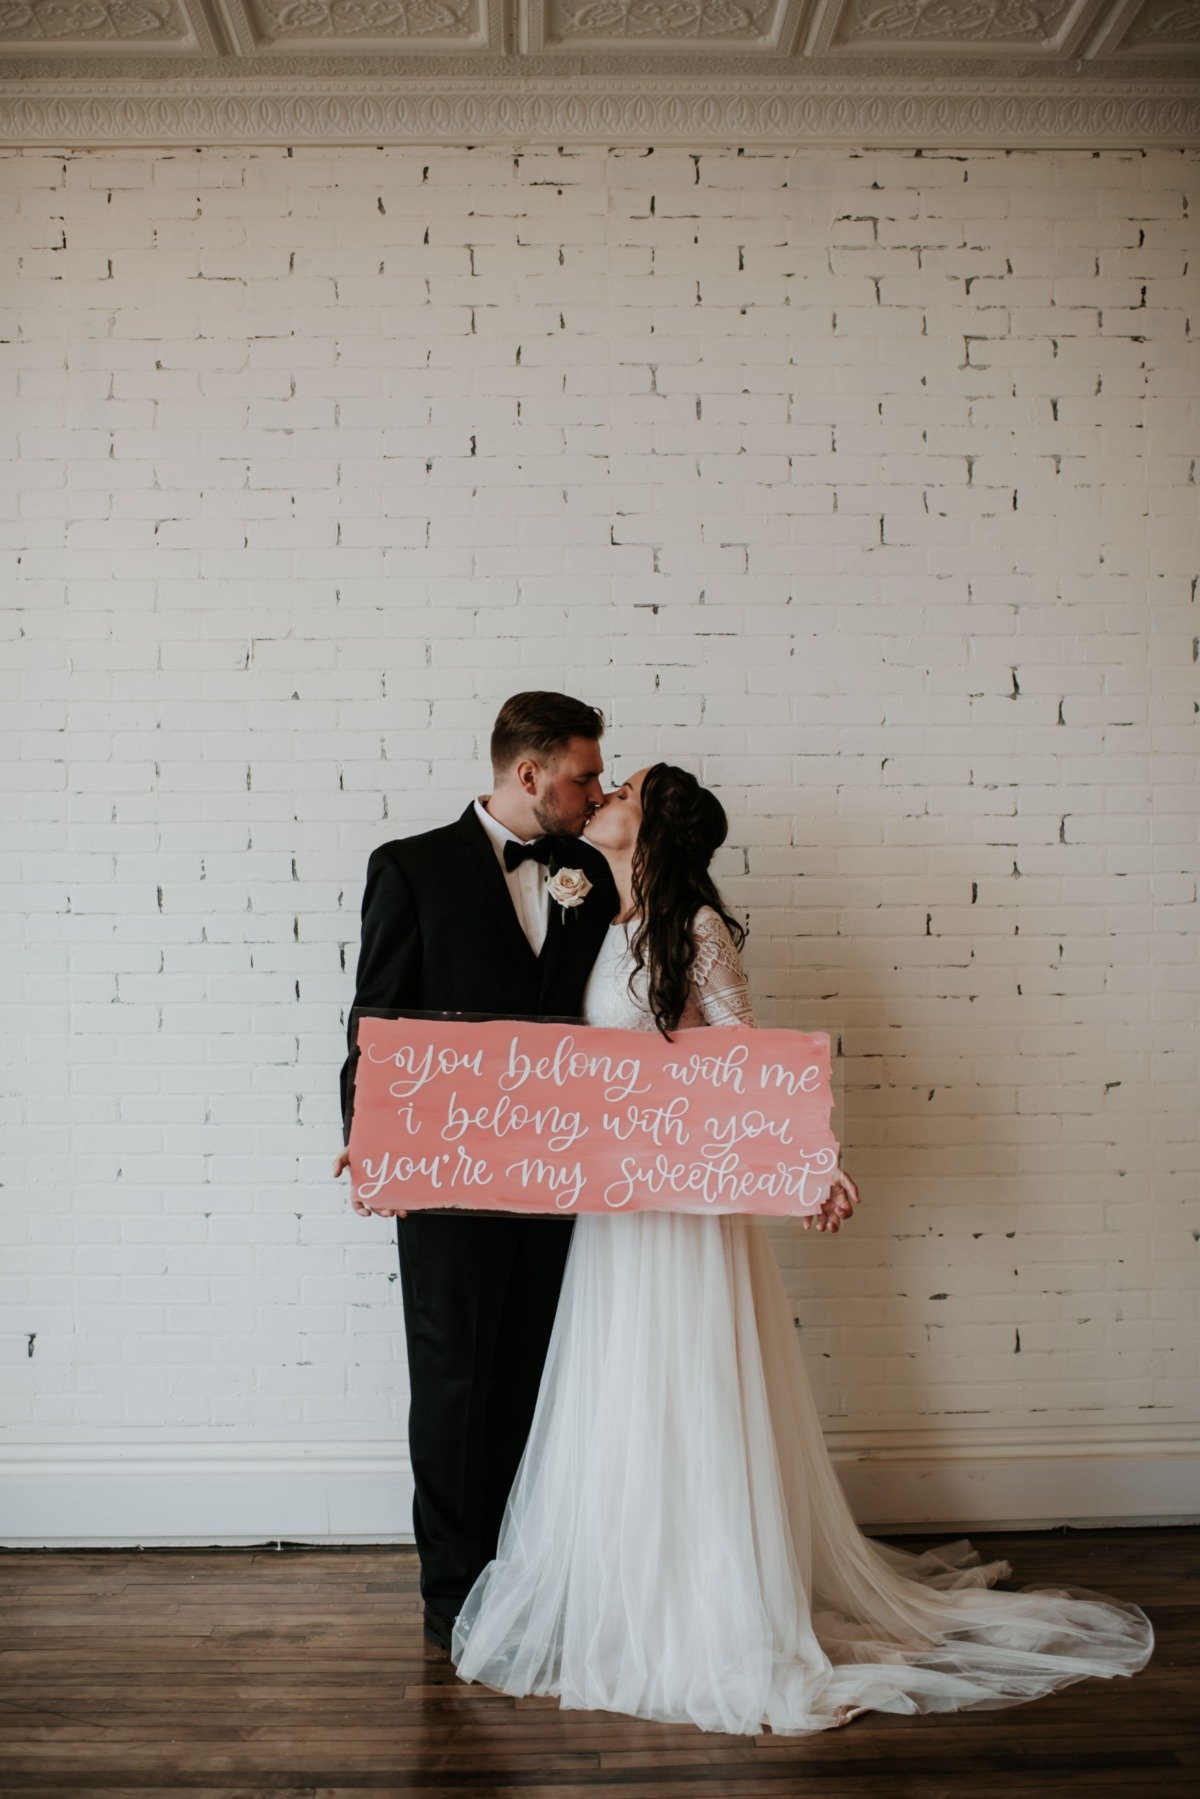 cute wedding sign